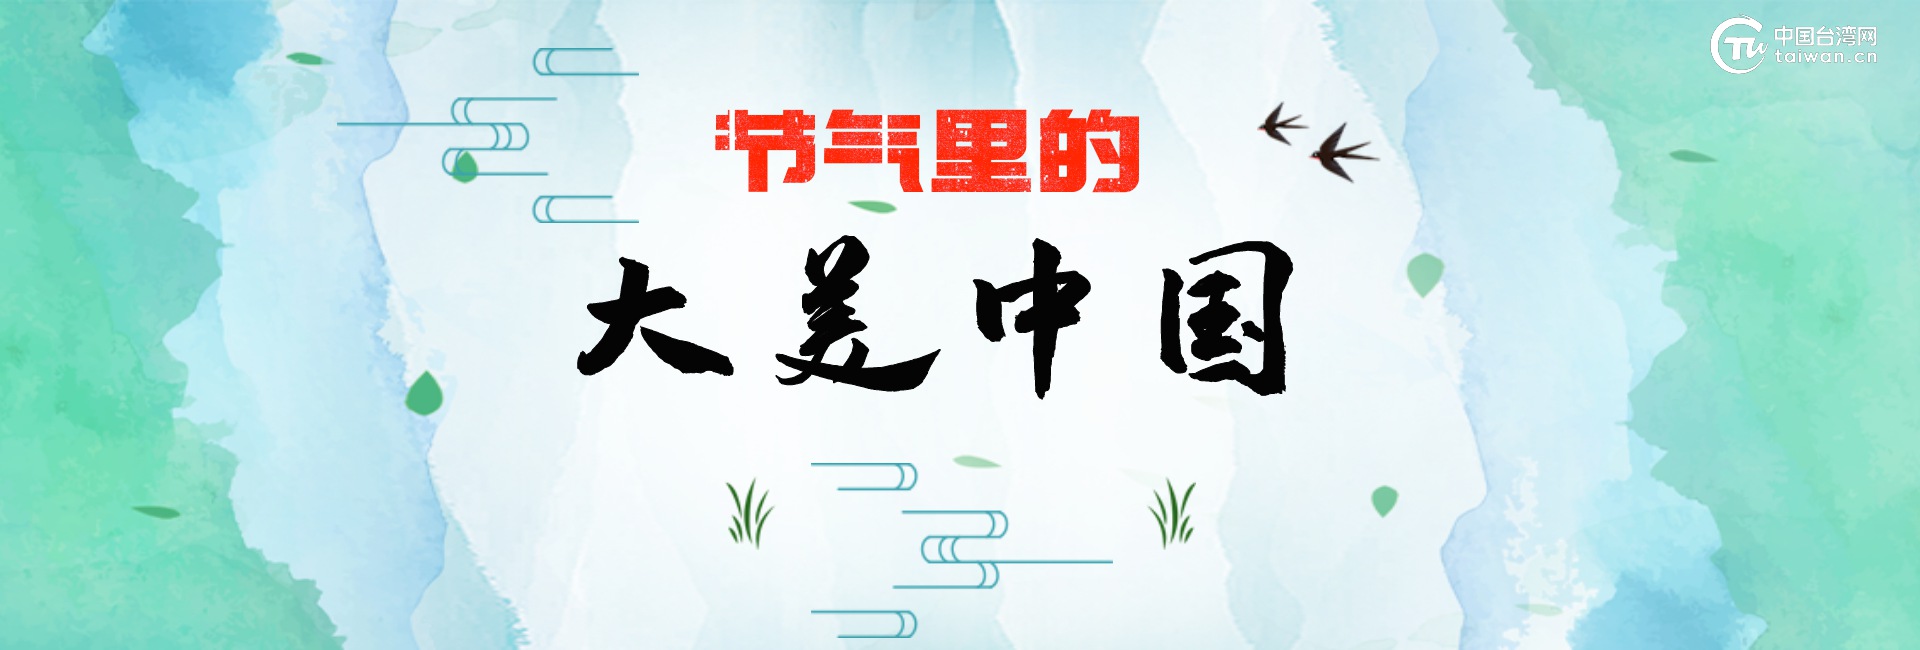 节气里的大美中国banner.jpg